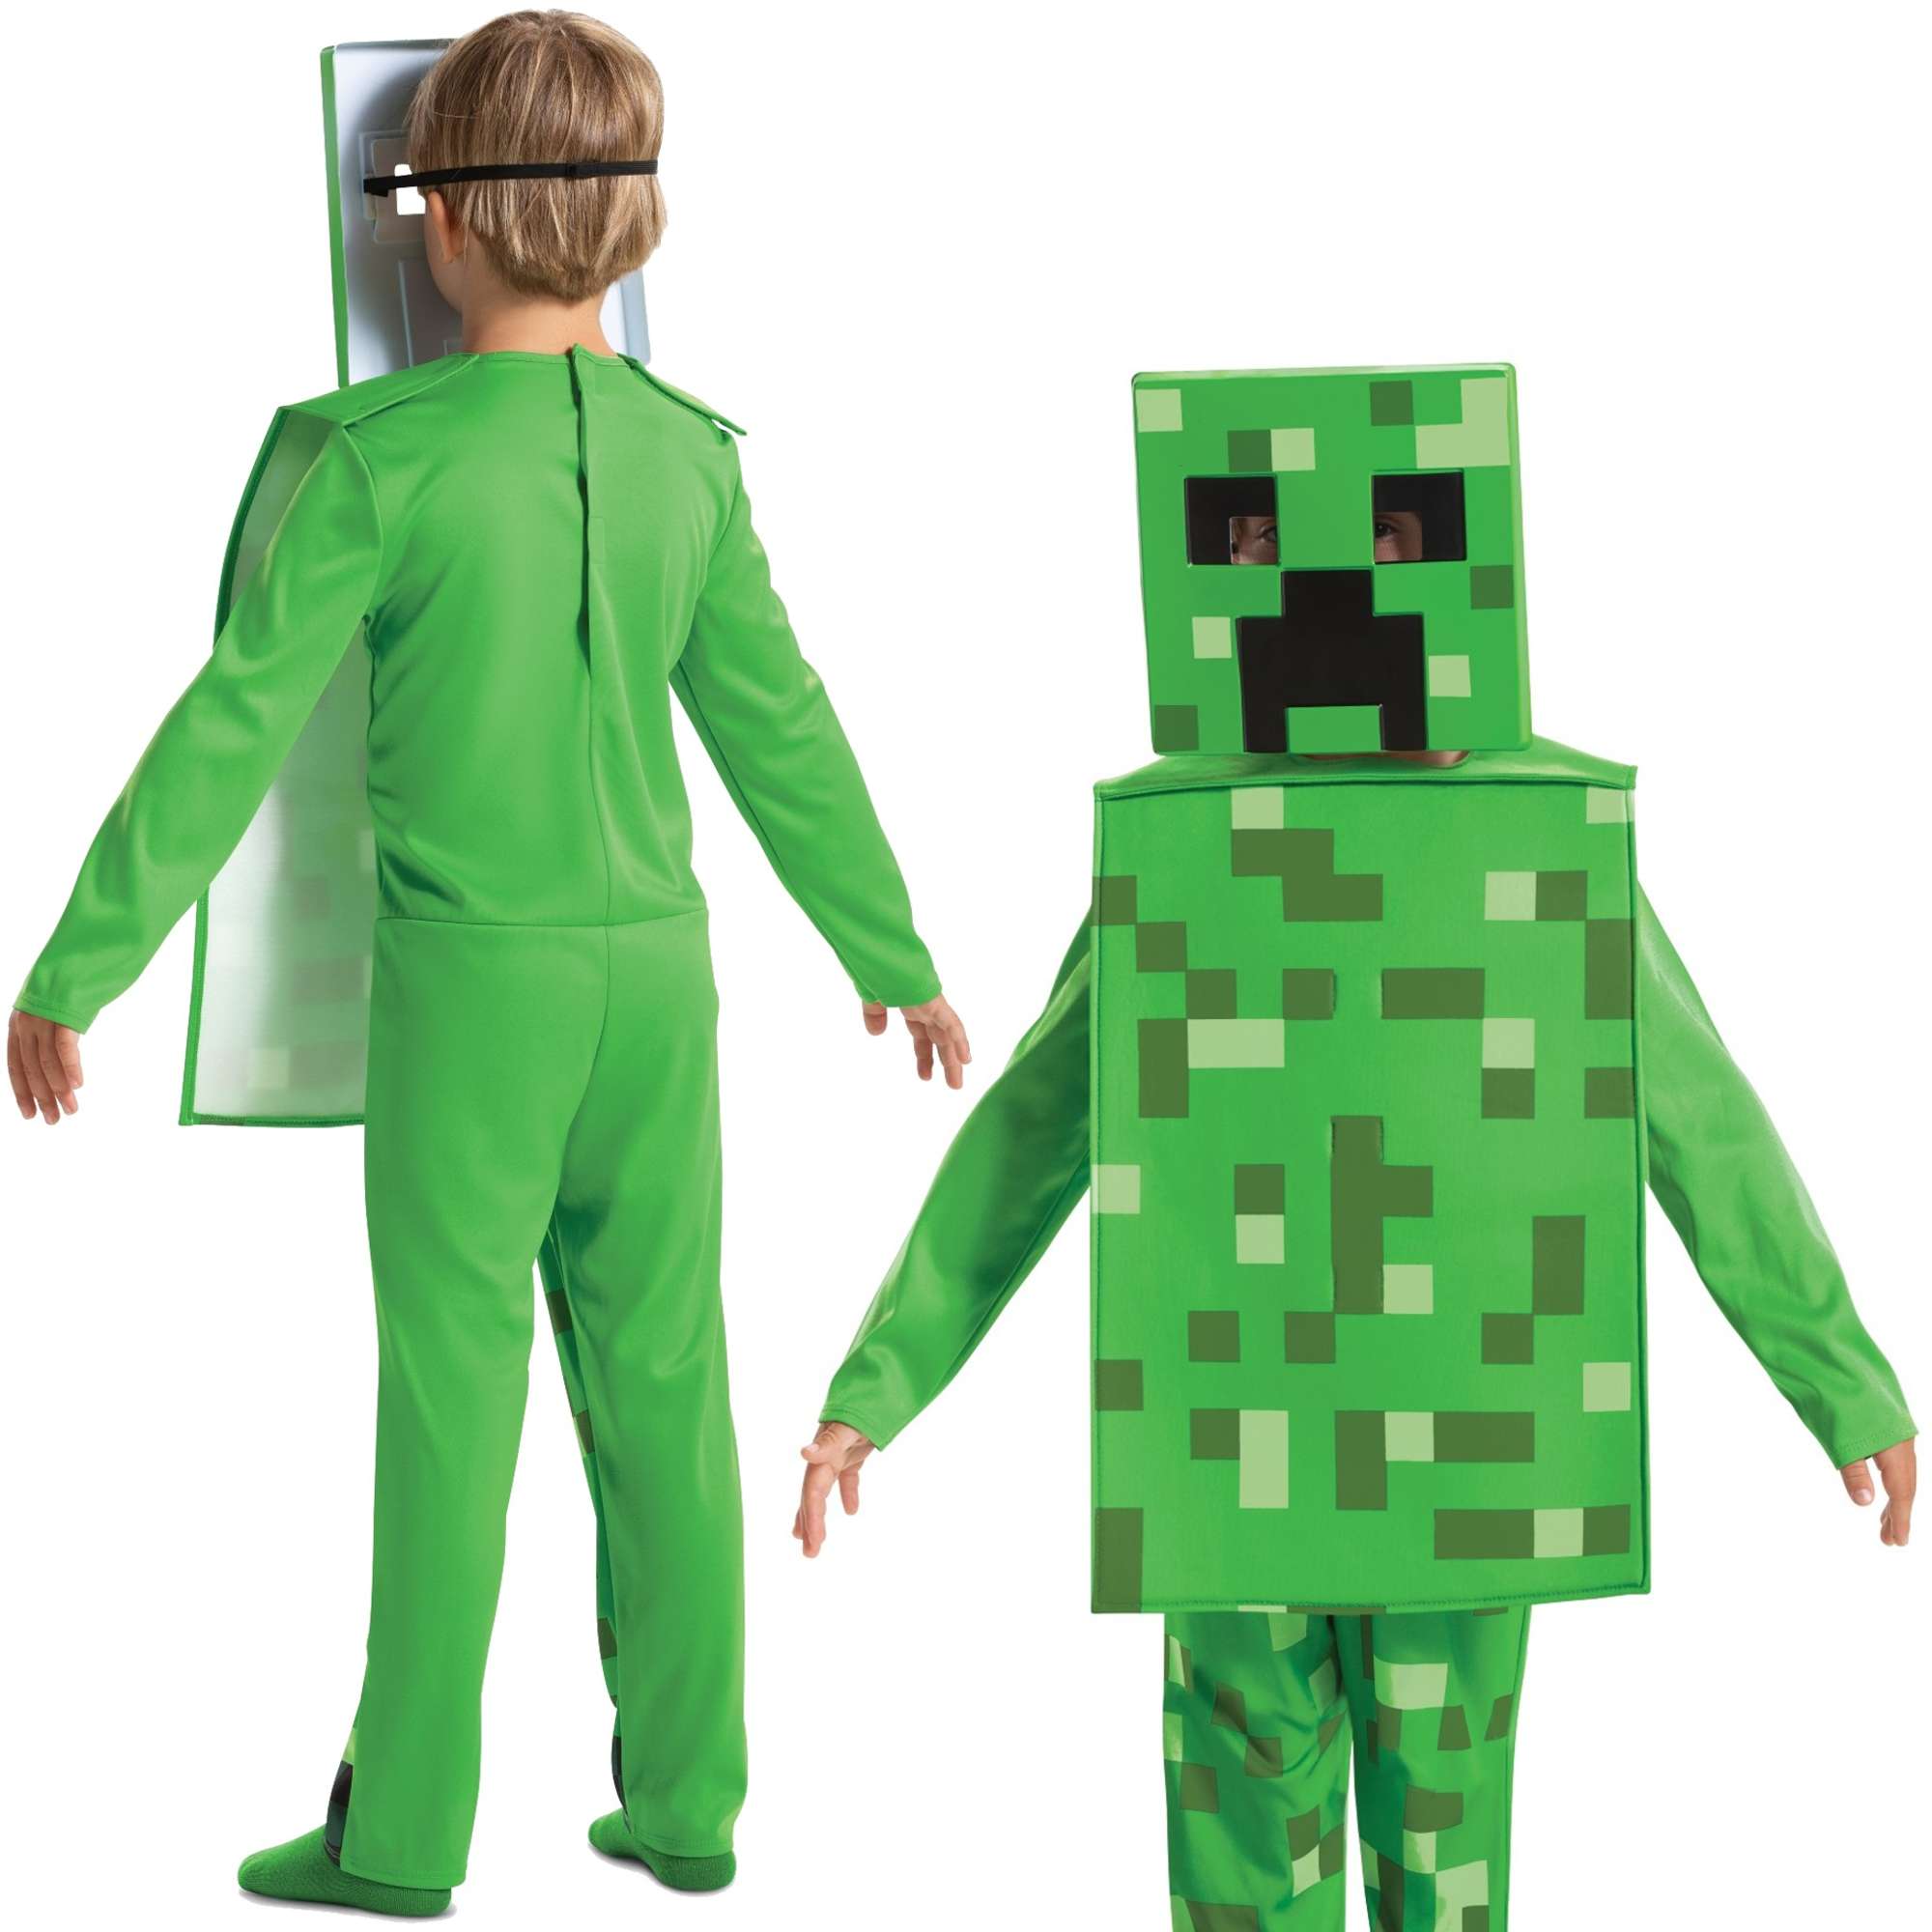 Minecraft strj karnawaowy dla chopca Creeper kostium przebranie 110-122 cm (4-6 lat)